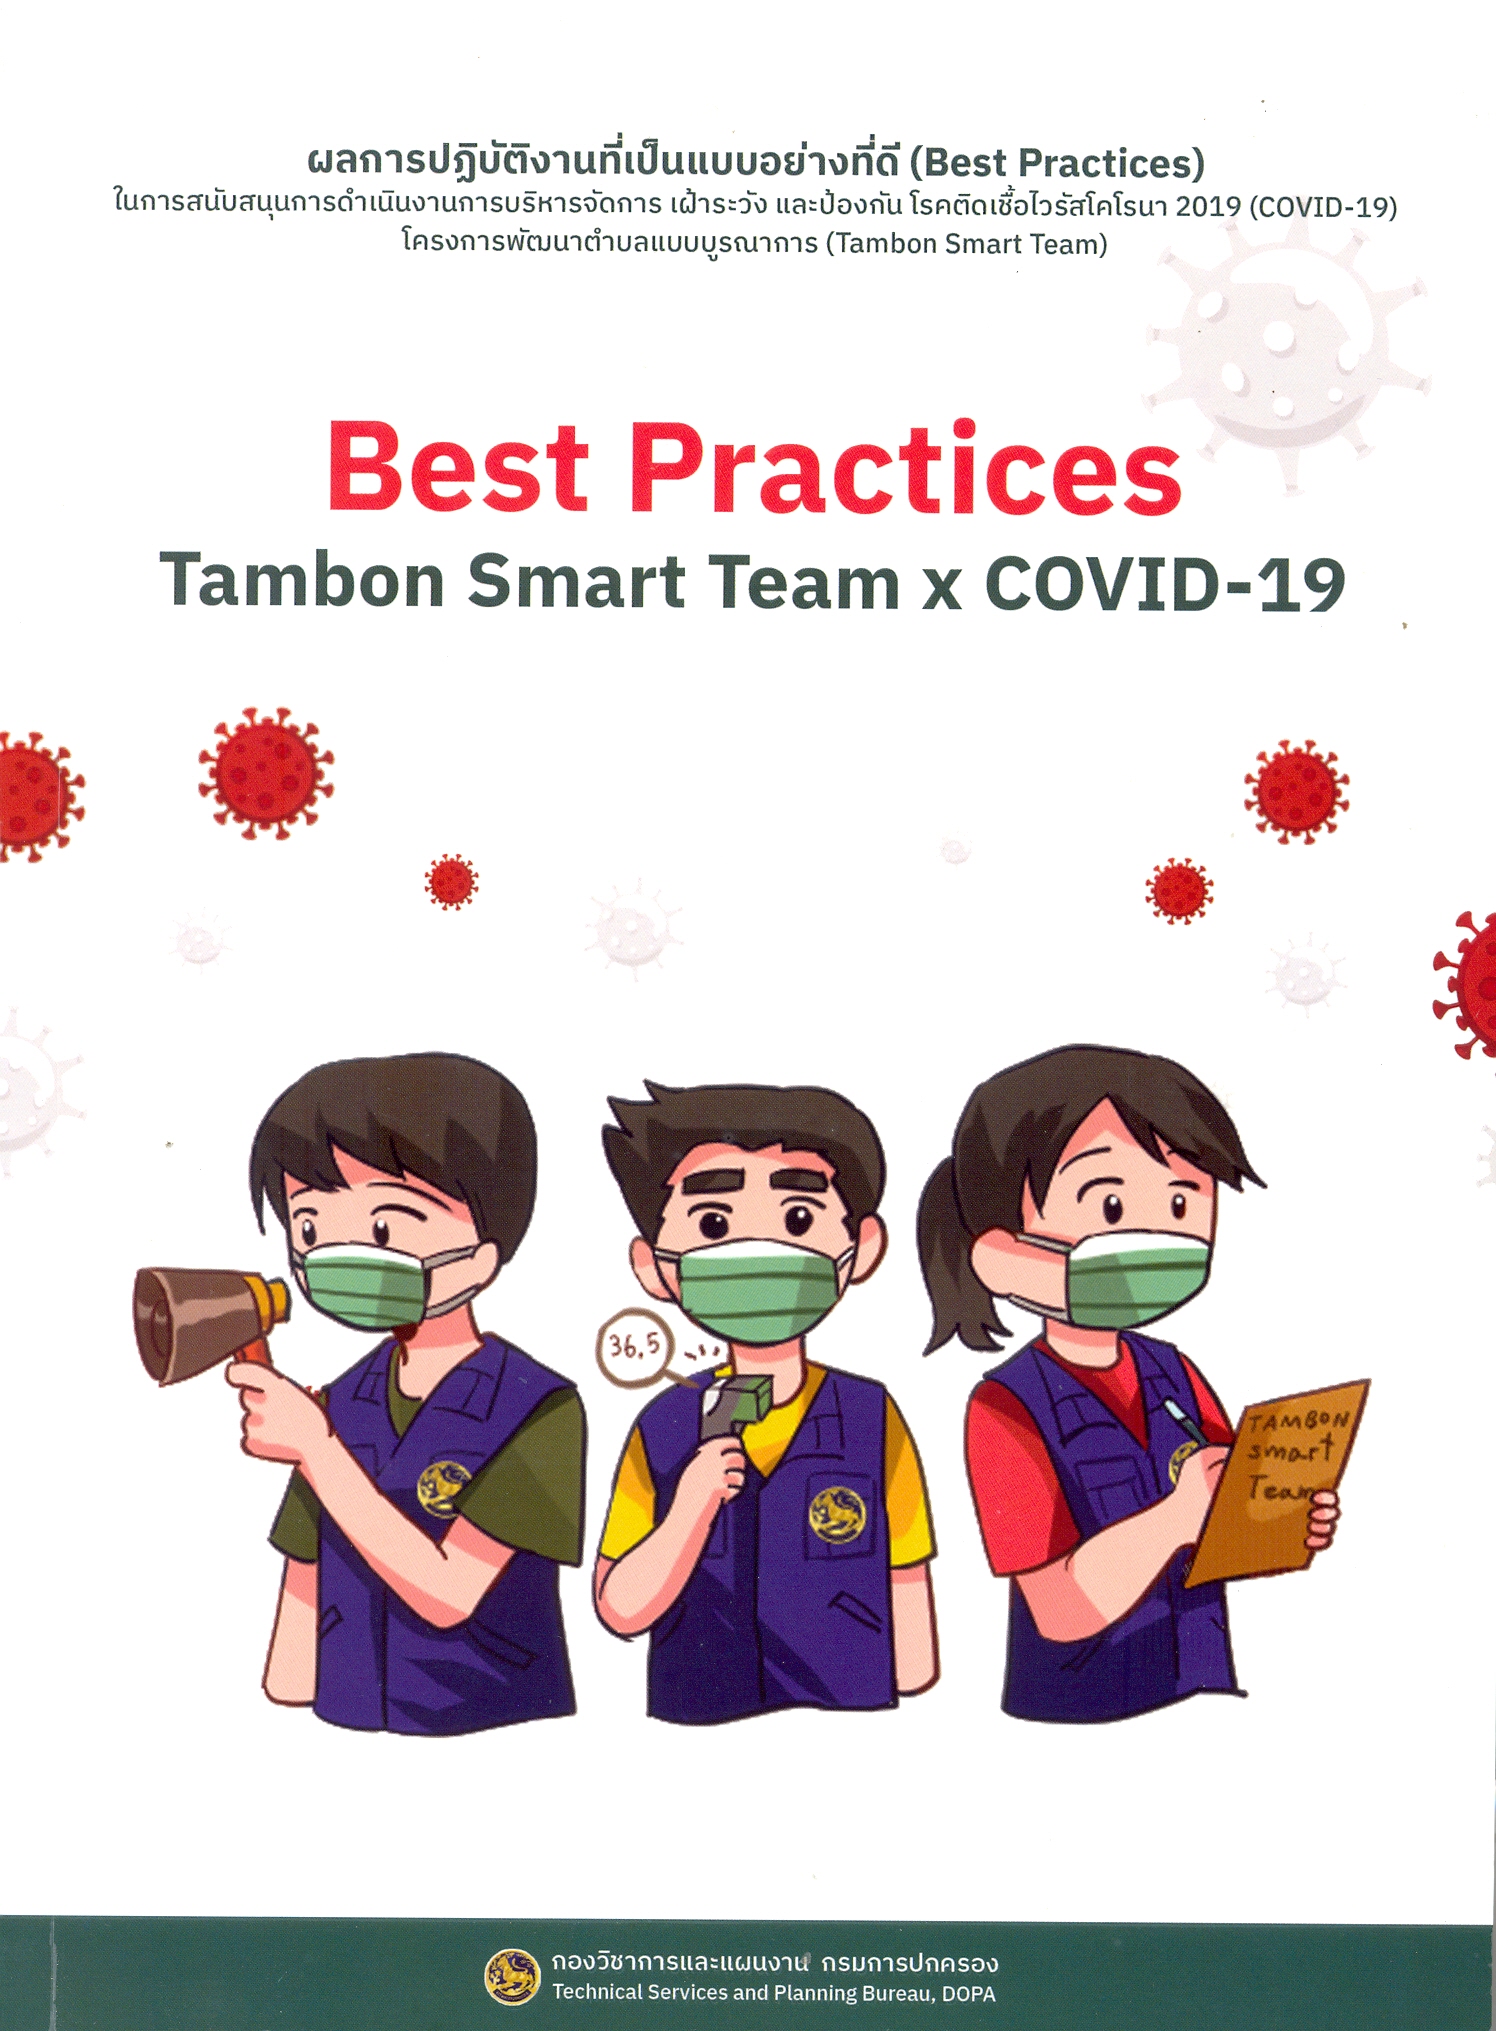 ผลการปฏิบัติงานที่เป็นแบบอย่างที่ดี (Best practices) ในการสนับสนุนการดำเนินงานการบริหารจัดการ เฝ้าระวัง และป้องกันโรคติดเชื้อไวรัสโคโรนา 2019 (COVID-19)โครงการพัฒนาตำบลแบบบูรณาการ (Tambon smart team)